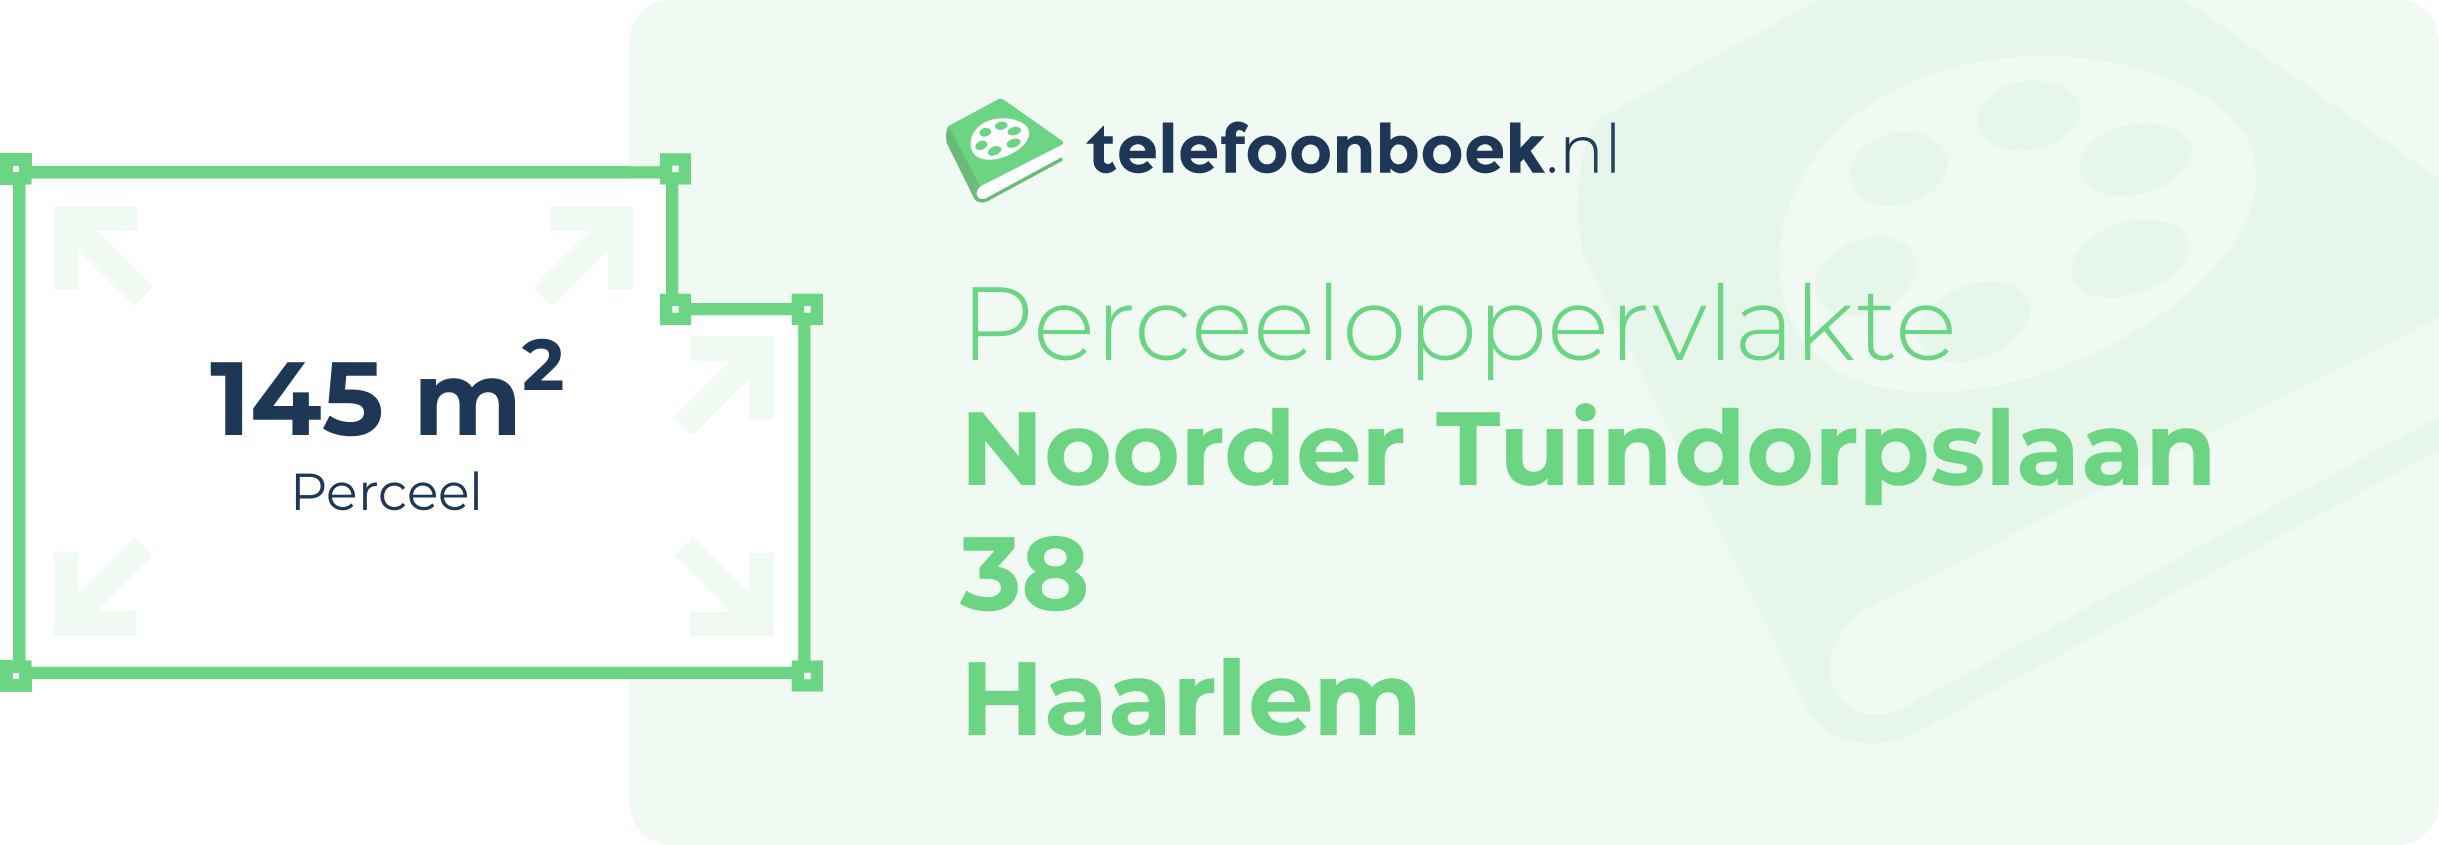 Perceeloppervlakte Noorder Tuindorpslaan 38 Haarlem